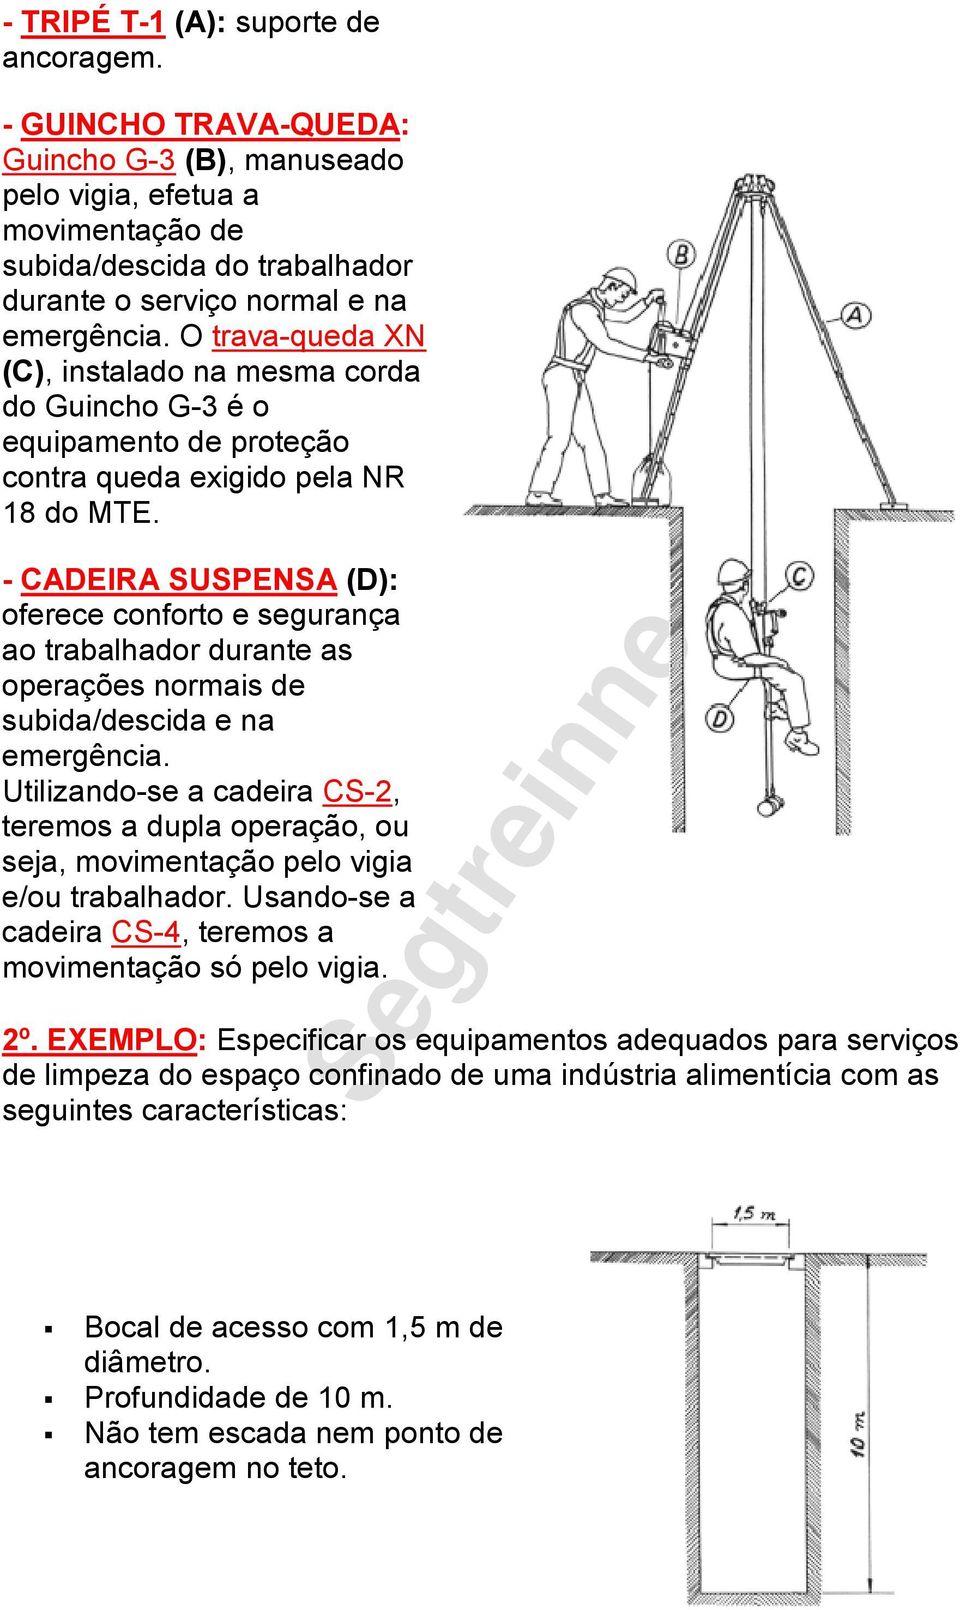 - CADEIRA SUSPENSA (D): oferece conforto e segurança ao trabalhador durante as operações normais de subida/descida e na emergência.